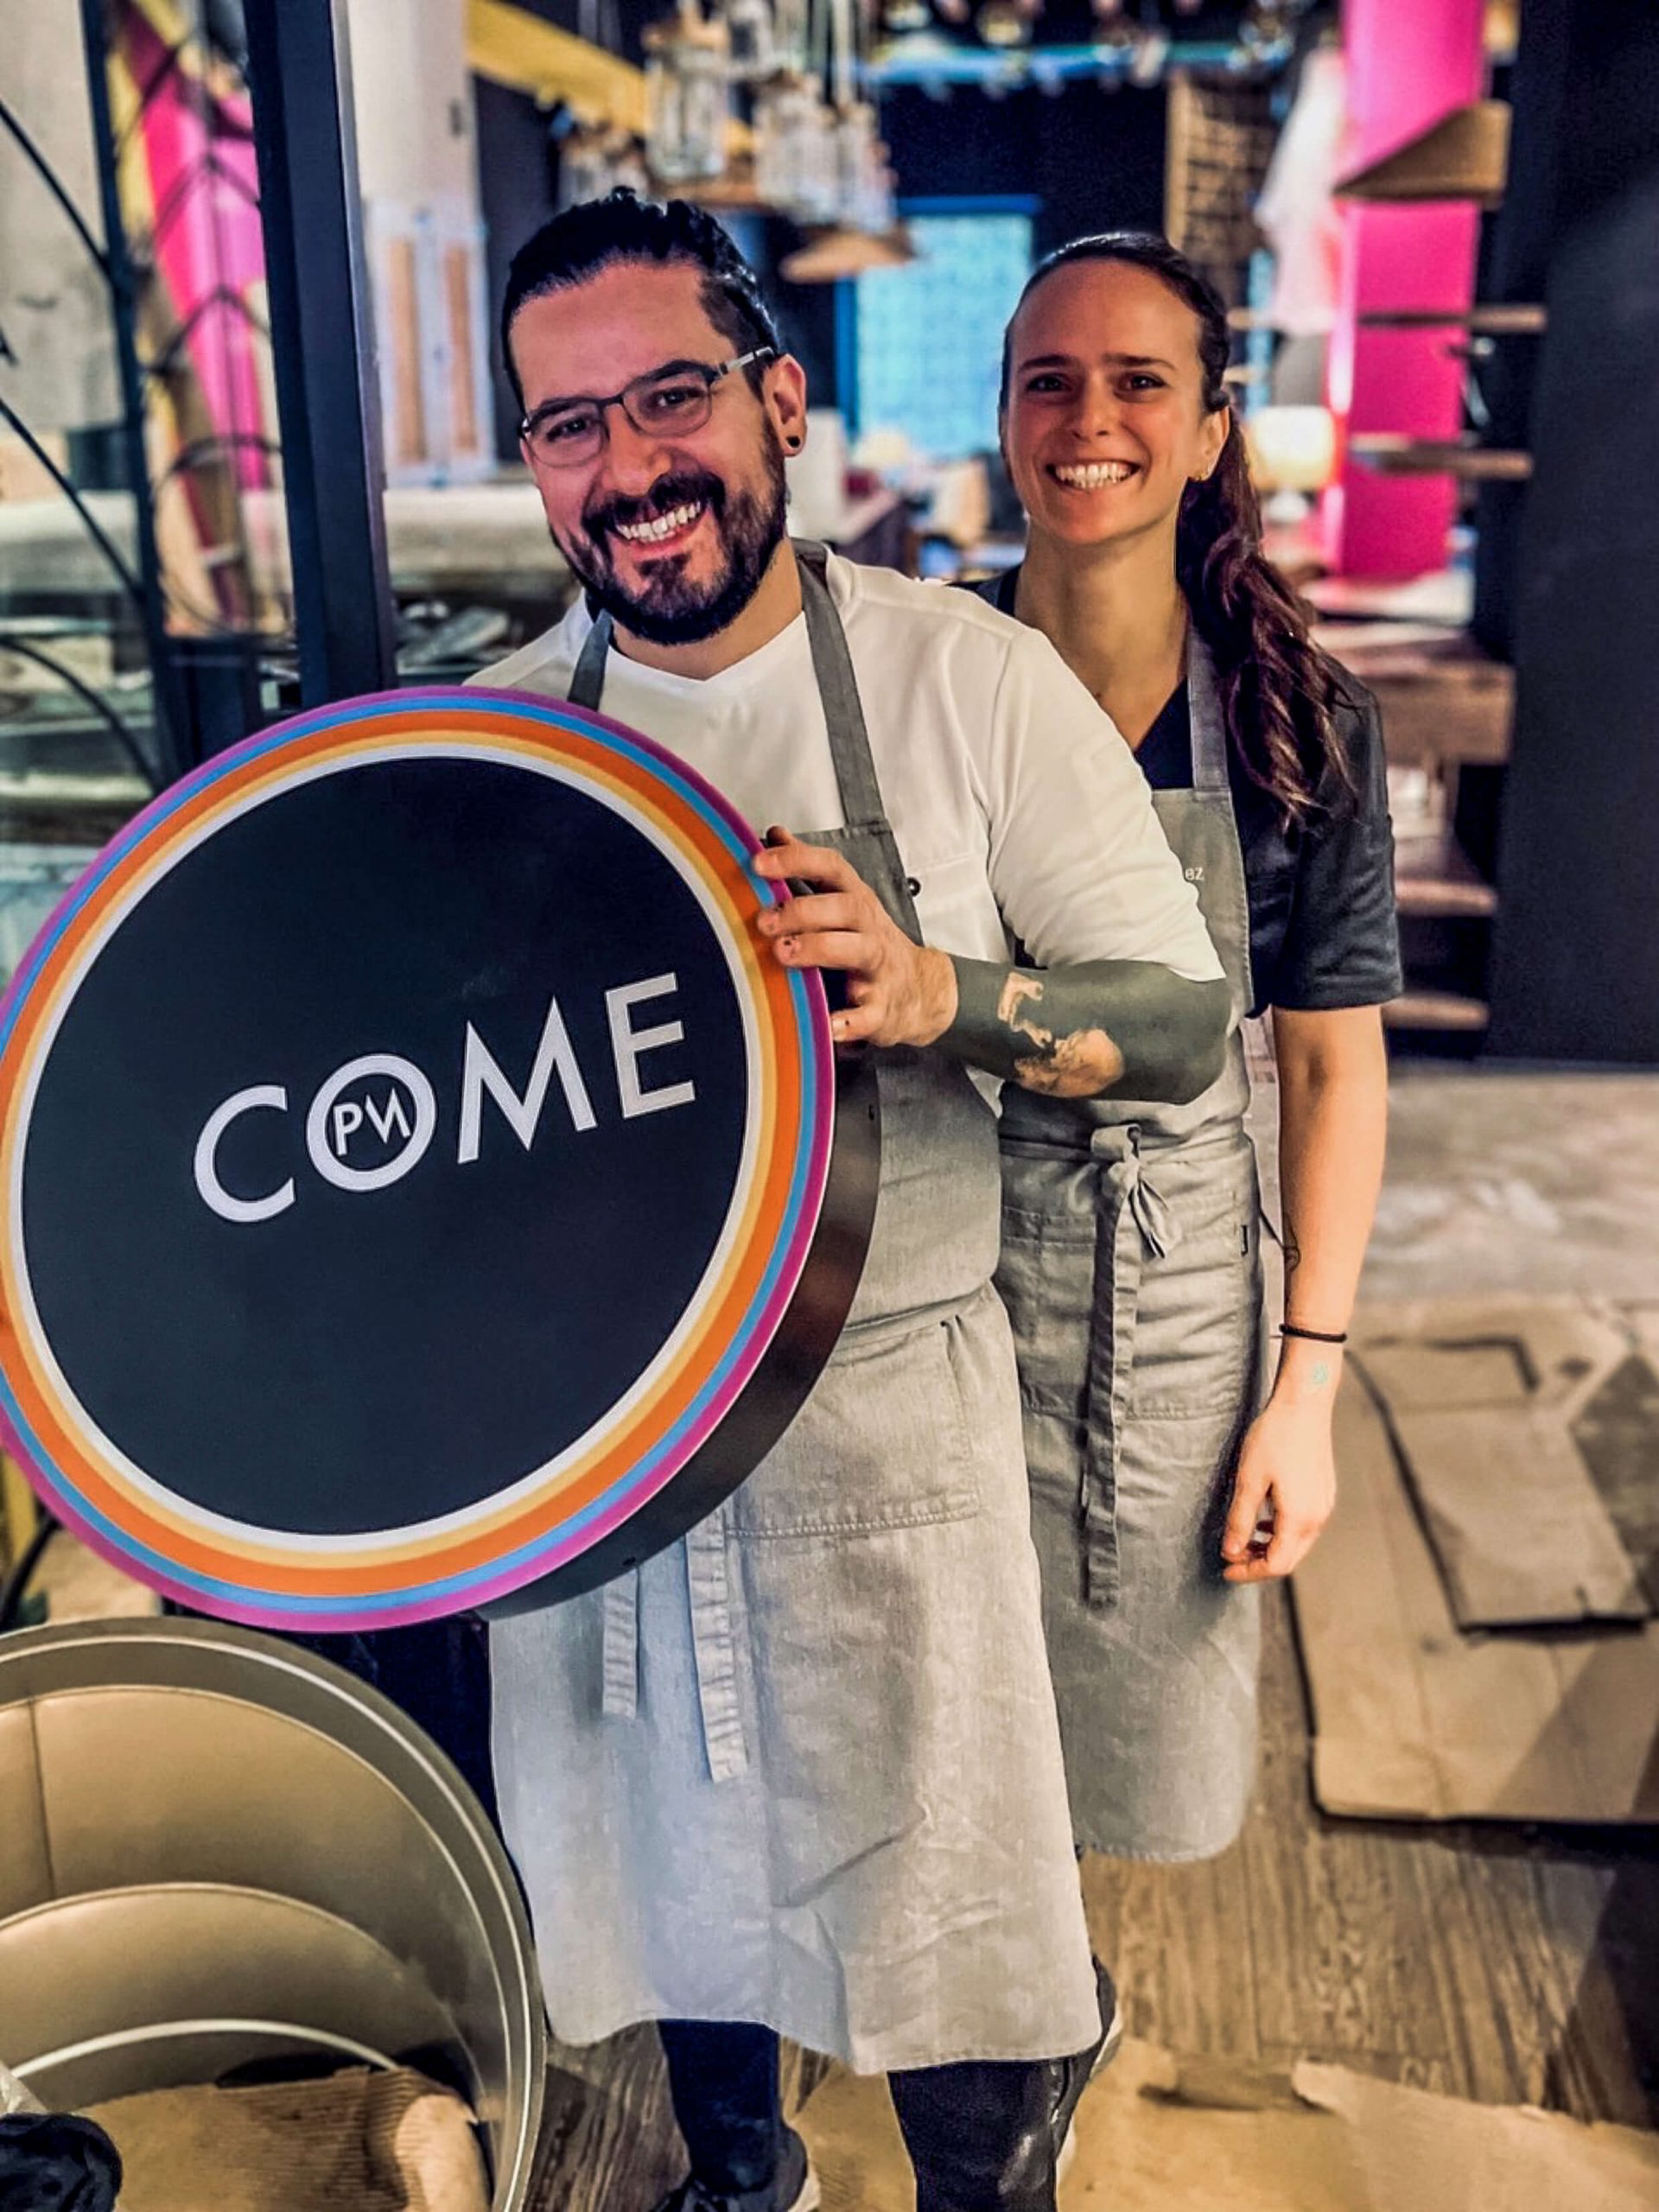 Paco Méndez mit seiner Frau in seinem neuen Restaurant "Come"